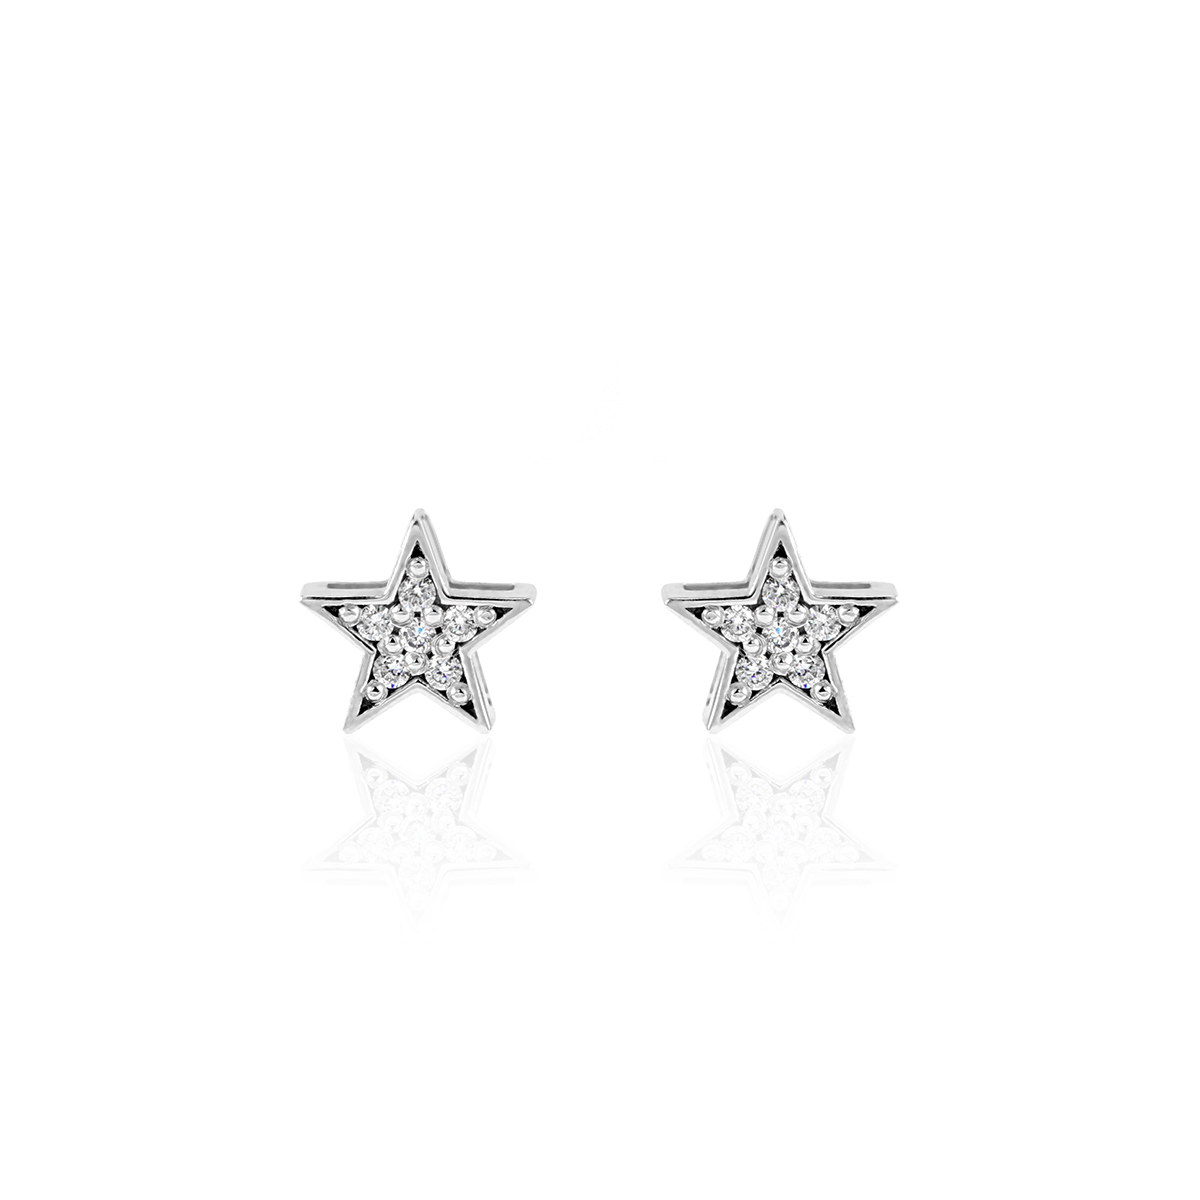 Sterling silver & cz star earrings